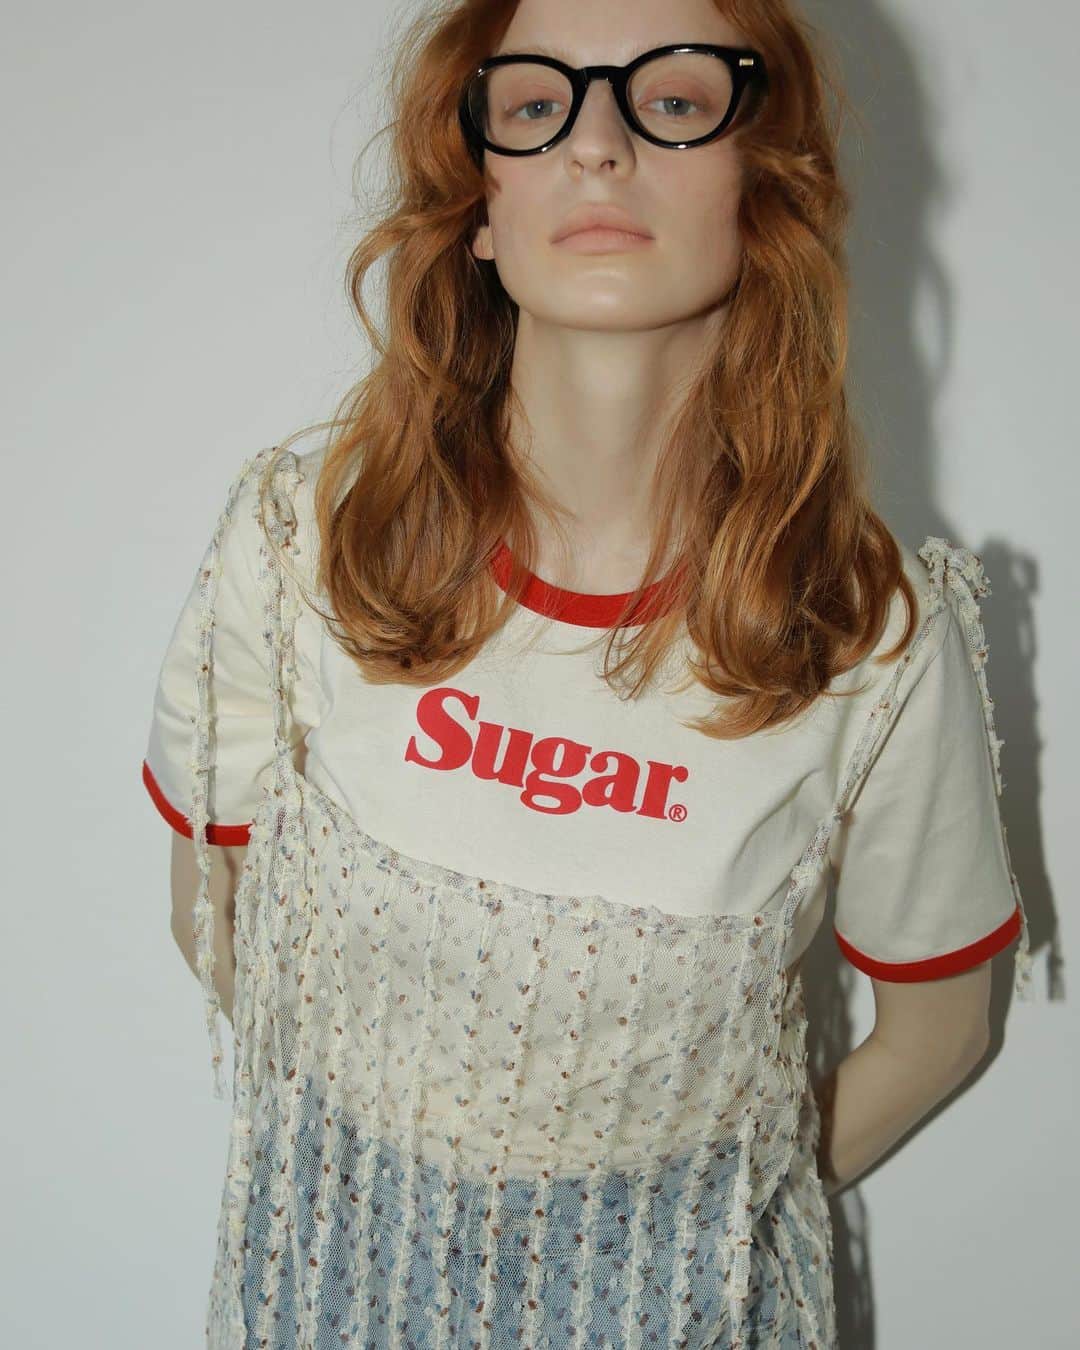 AMAILのインスタグラム：「#comingsoon 4/28(金)お昼12:00〜販売スタート   Sugar line cloth ￥5,500 color: RED/GRN size: FREE  フロントに施された『Sugar』ロゴがシンプルながら、 スタイリッシュな印象を与えてくれるリンガーTシャツ。 甘さとカジュアルさのバランスが取れた 配色が可愛らしい印象を持ち合わせています。 女性らしい体型を拾いすぎず、 着心地も良いボックスシルエットは、 腰回りをカバーしてくれるため、着心地も抜群。 また、リラックスした雰囲気を醸し出しながらも、 スッキリとした印象を与えてくれるため、 スタイリングの幅も広がります。  デニムパンツやスカートなど、 どんなアイテムにも合わせやすく、 様々なスタイルにマッチします。 また、ロゴが特徴的なため、 シンプルなアイテムとの相性も抜群です。  #AMAIL #アマイル #ロゴT」